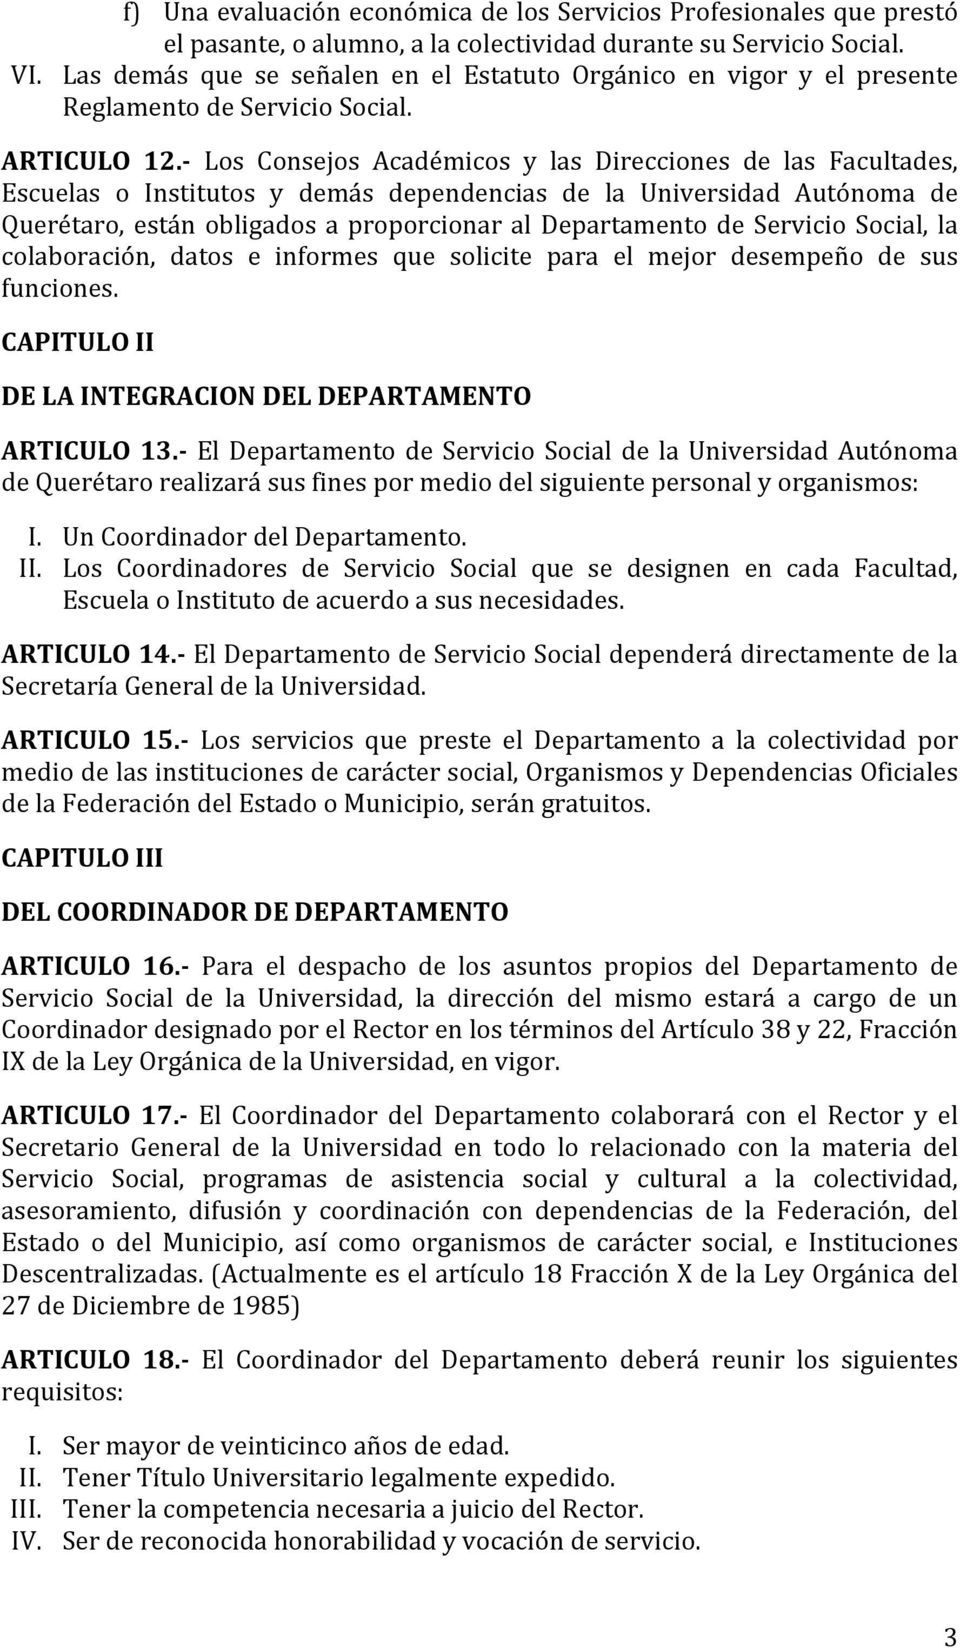 - Los Consejos Académicos y las Direcciones de las Facultades, Escuelas o Institutos y demás dependencias de la Universidad Autónoma de Querétaro, están obligados a proporcionar al Departamento de